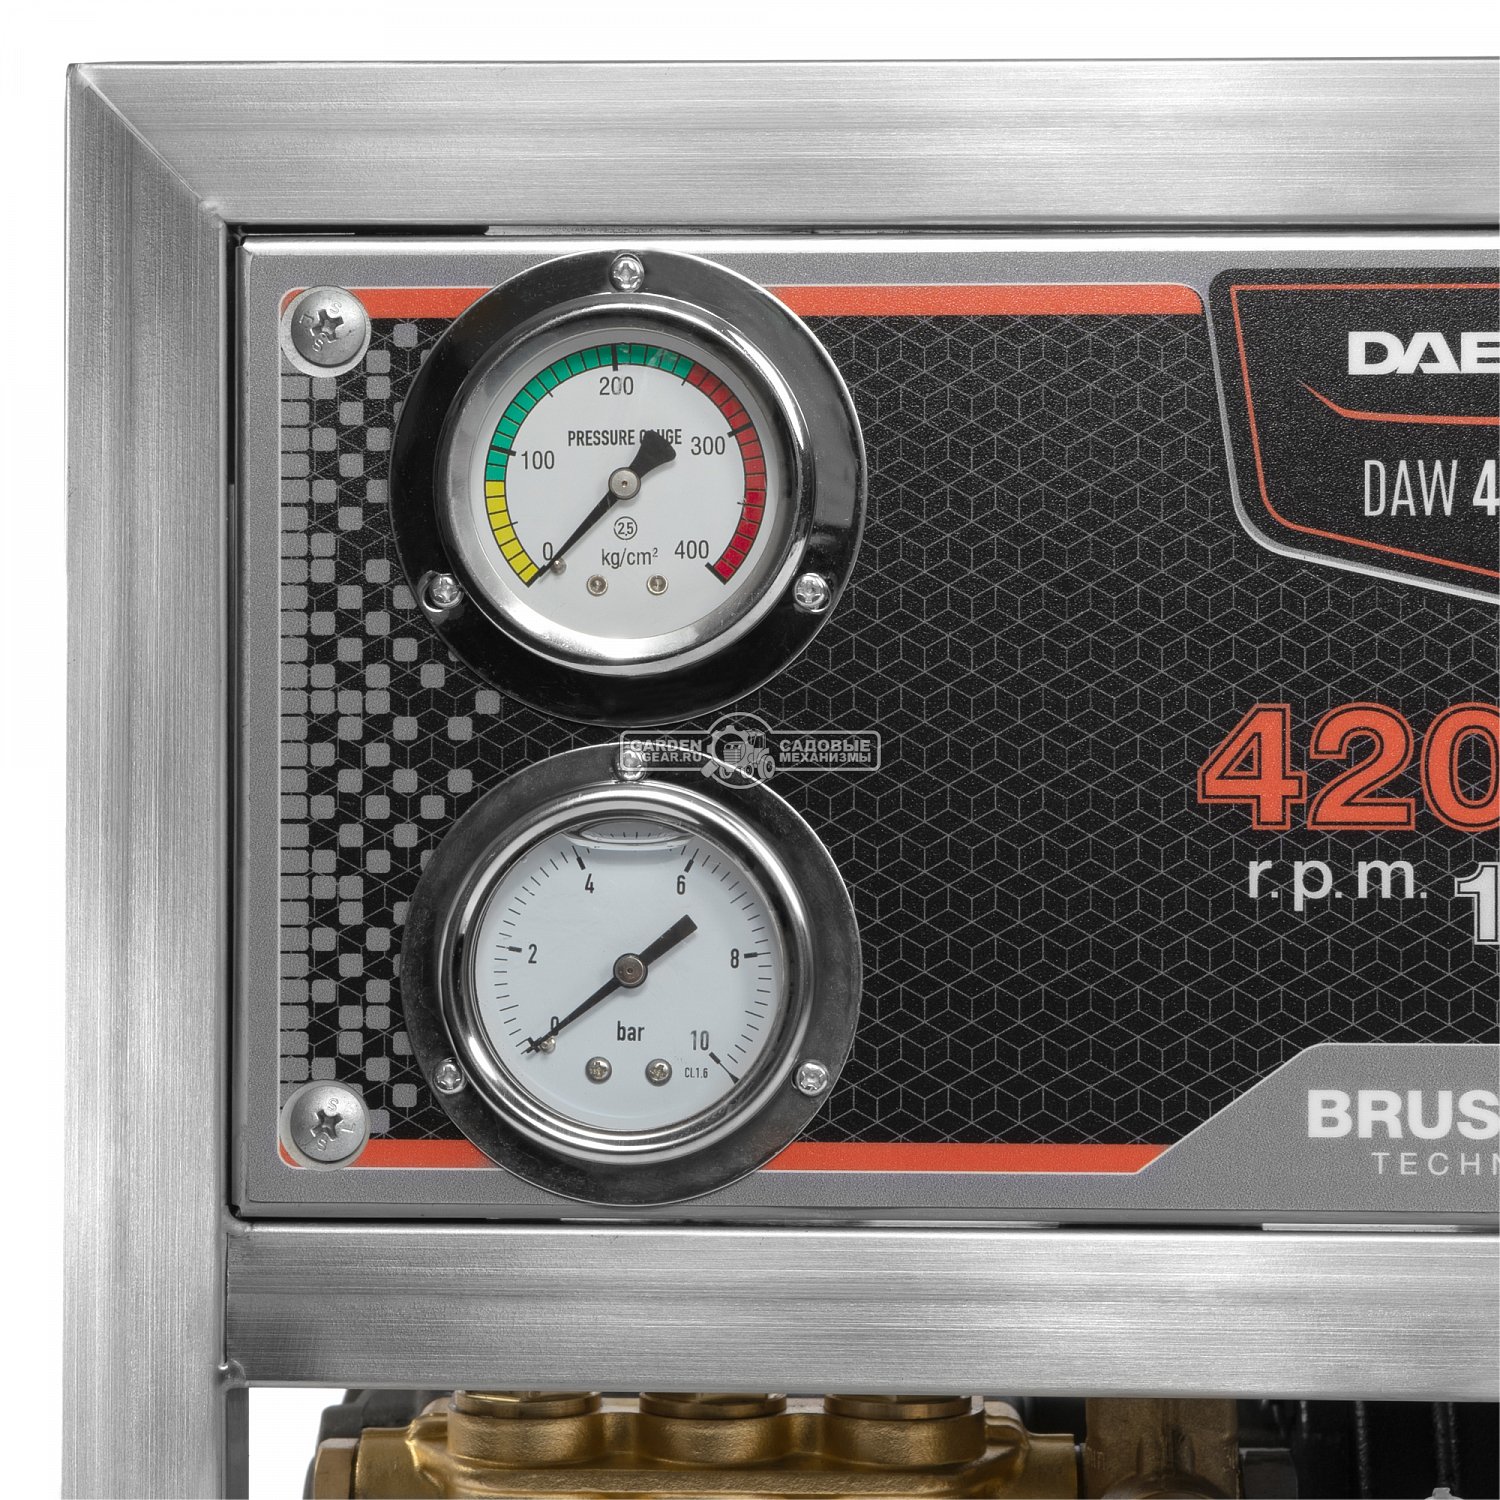 Мойка высокого давления Daewoo DAW 4000 S-3 (PRC, 4200 Вт, 200 бар, 960 л/час, бесщеточный мотор, шланг 10 м., латунная помпа, металл. рама, 59,5 кг)